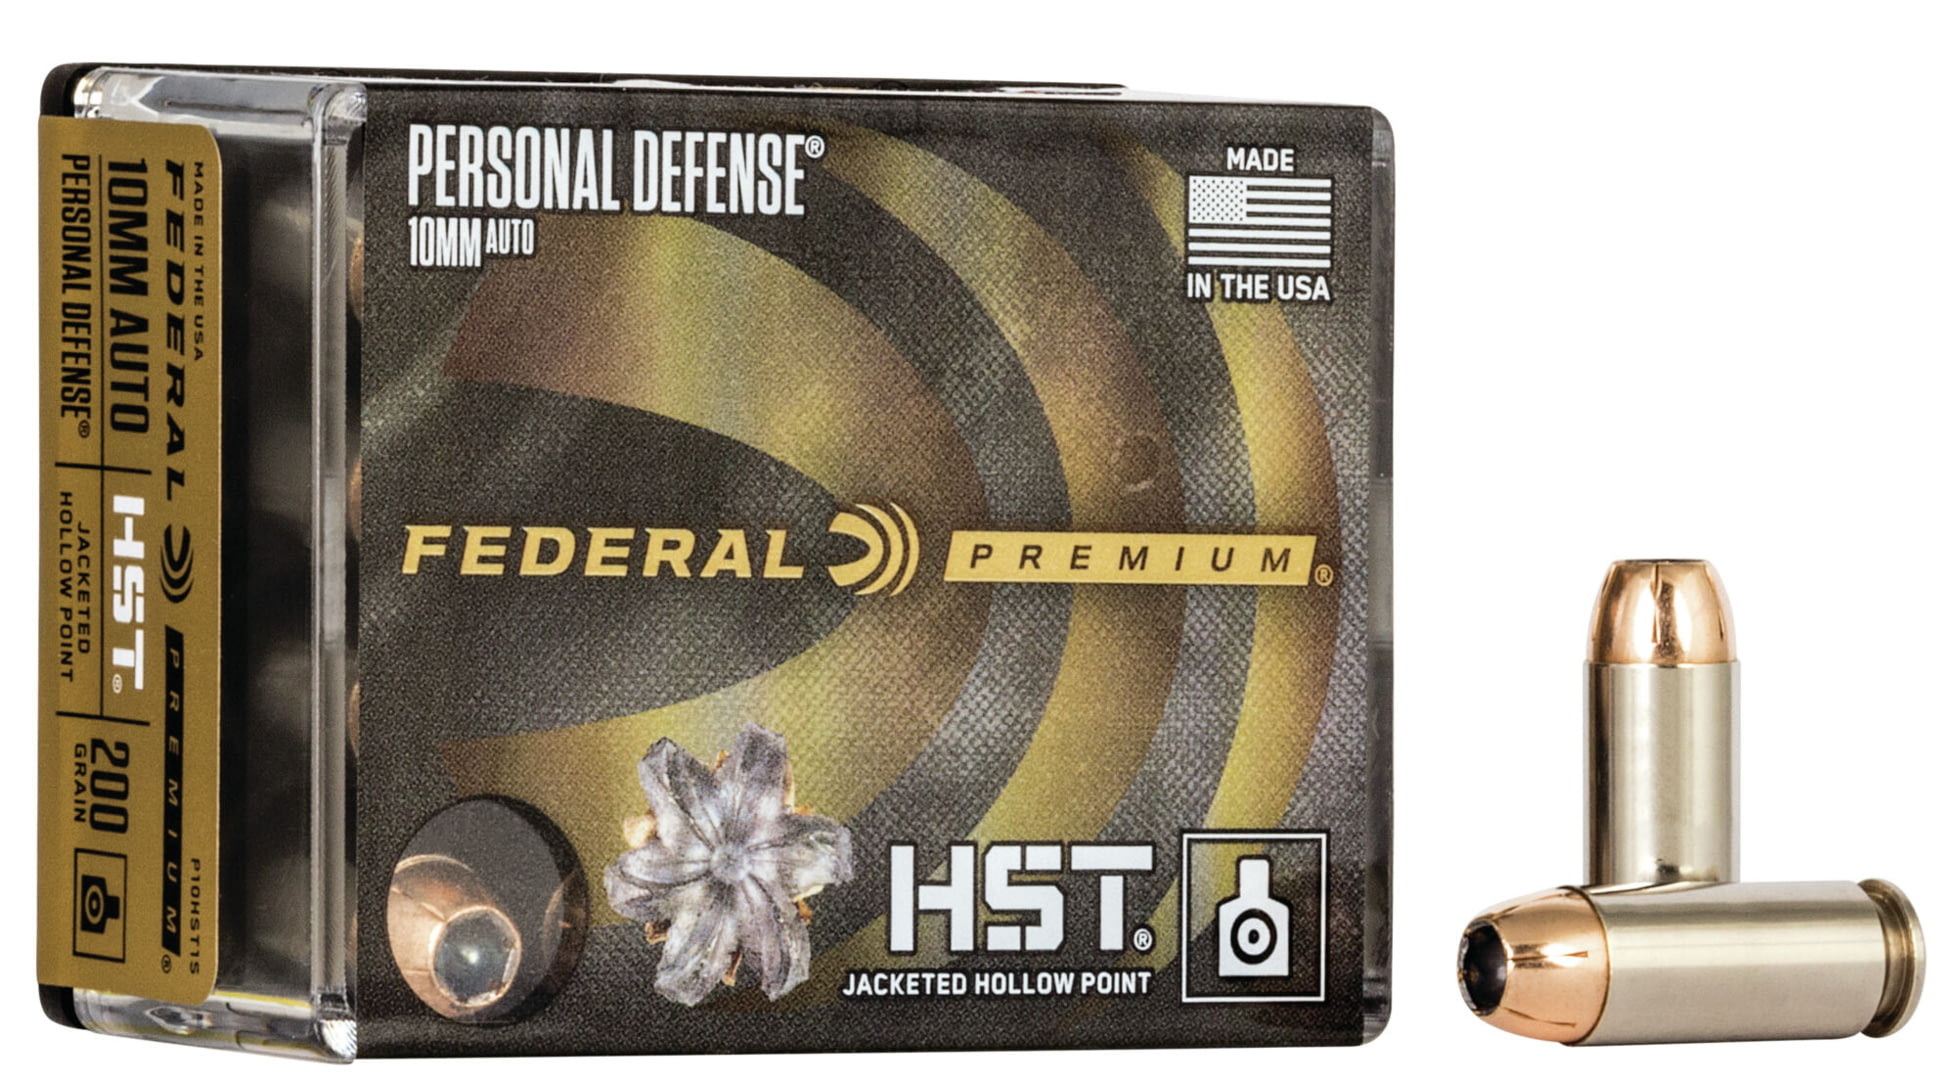 Federal Premium Centerfire Handgun Ammunition 10mm Auto 200 grain HST Jacketed Hollow Point Centerfire Pistol Ammunition